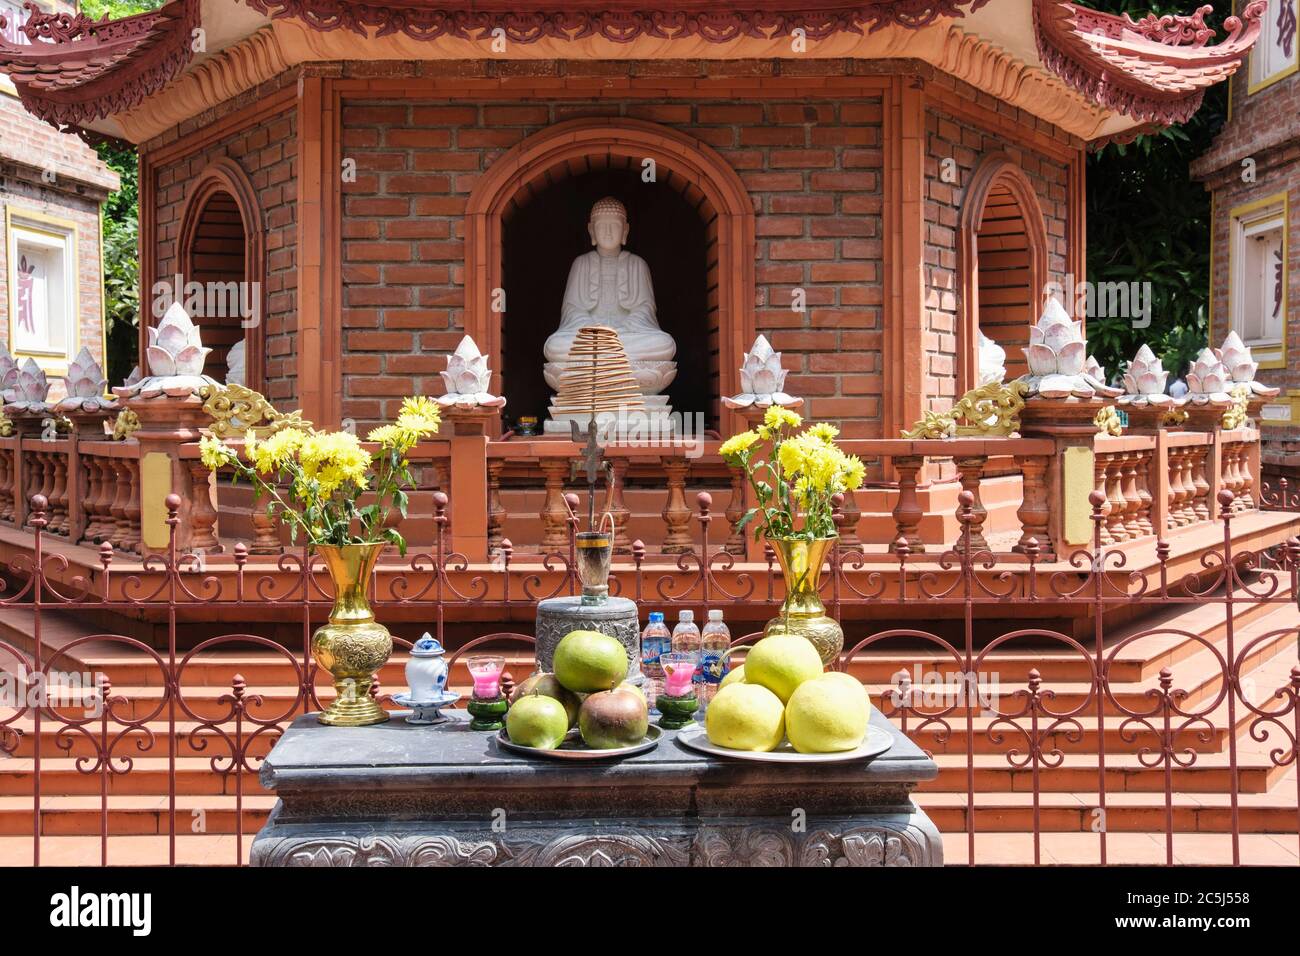 Repas offerts sur une table par la Pagode Tran Quoc dans le temple bouddhiste comlpex. Hanoï, Vietnam, Asie Banque D'Images